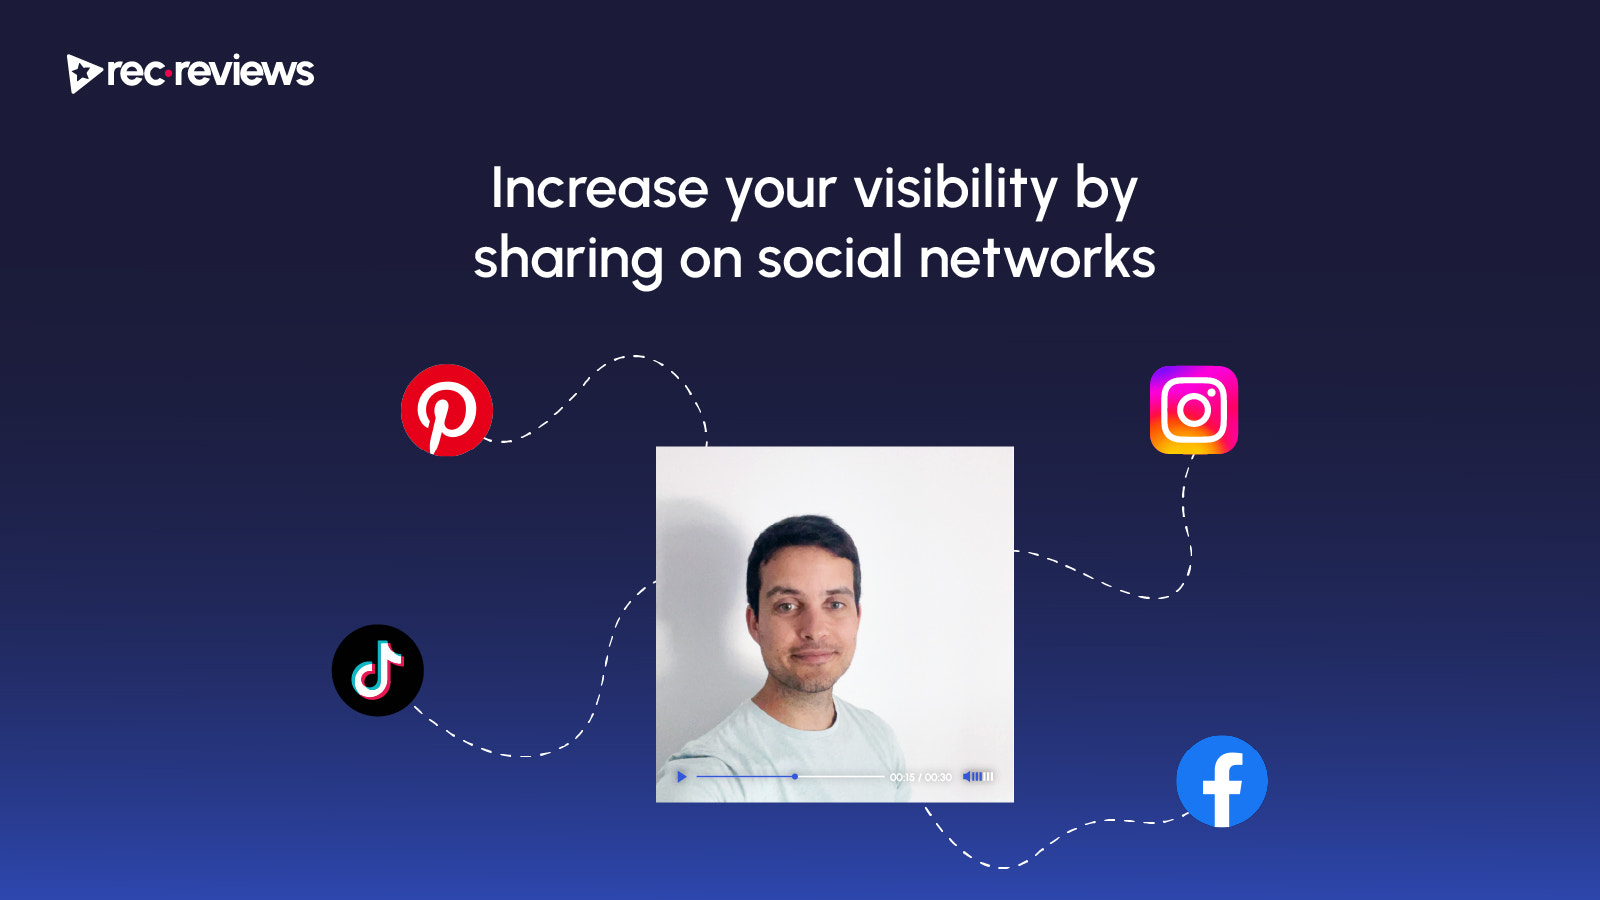 Öka din synlighet genom att dela på sociala nätverk